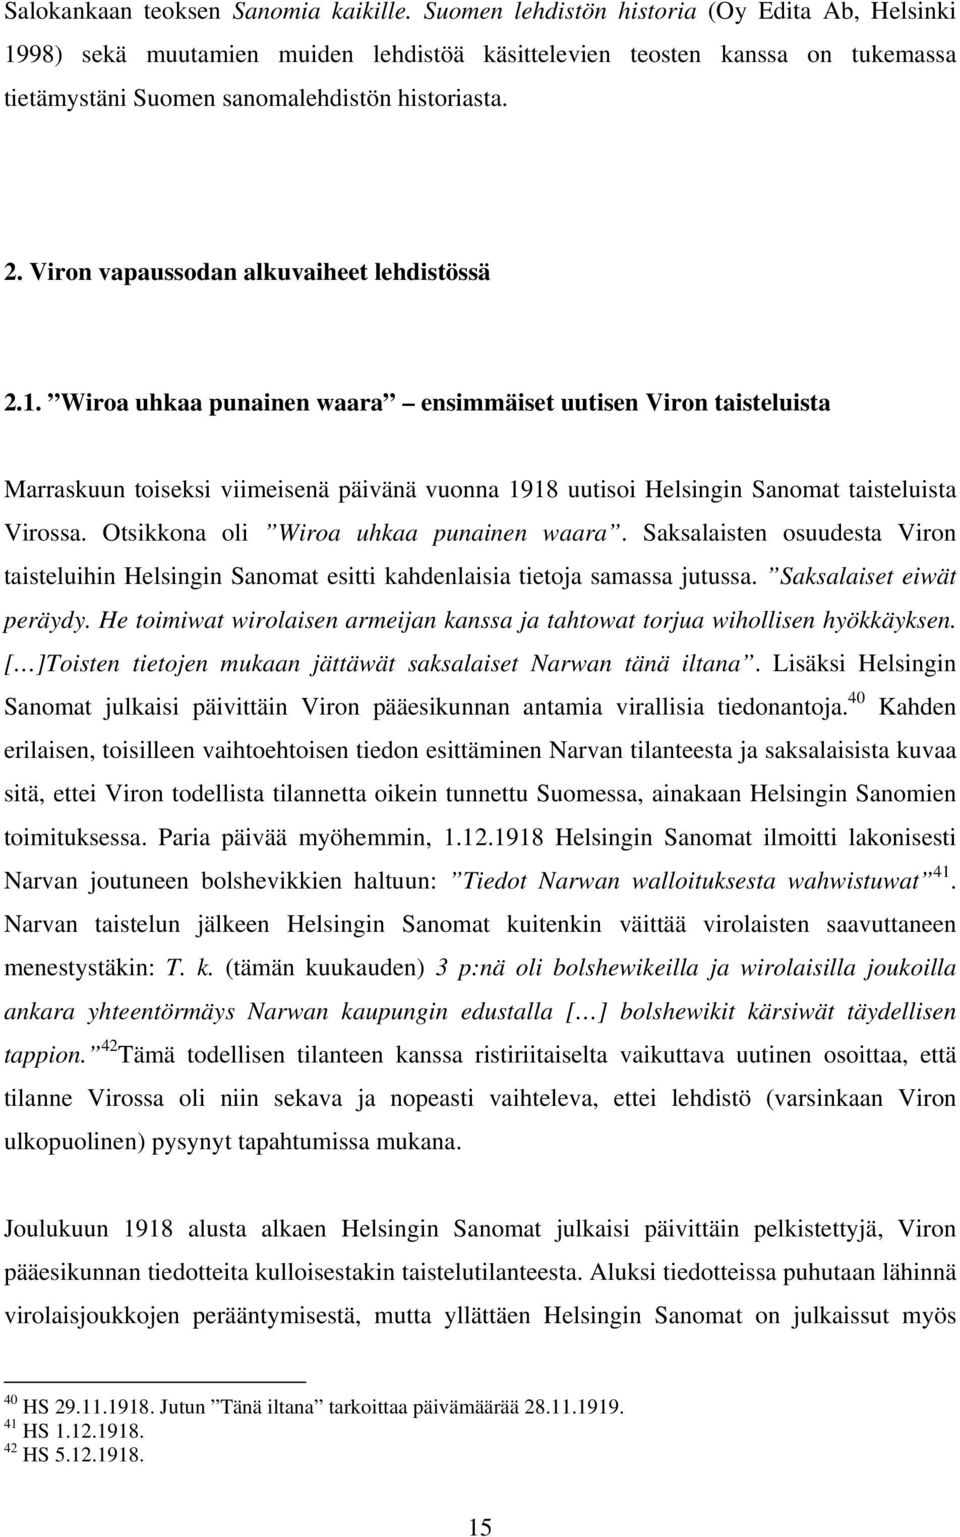 Viron vapaussodan alkuvaiheet lehdistössä 2.1.